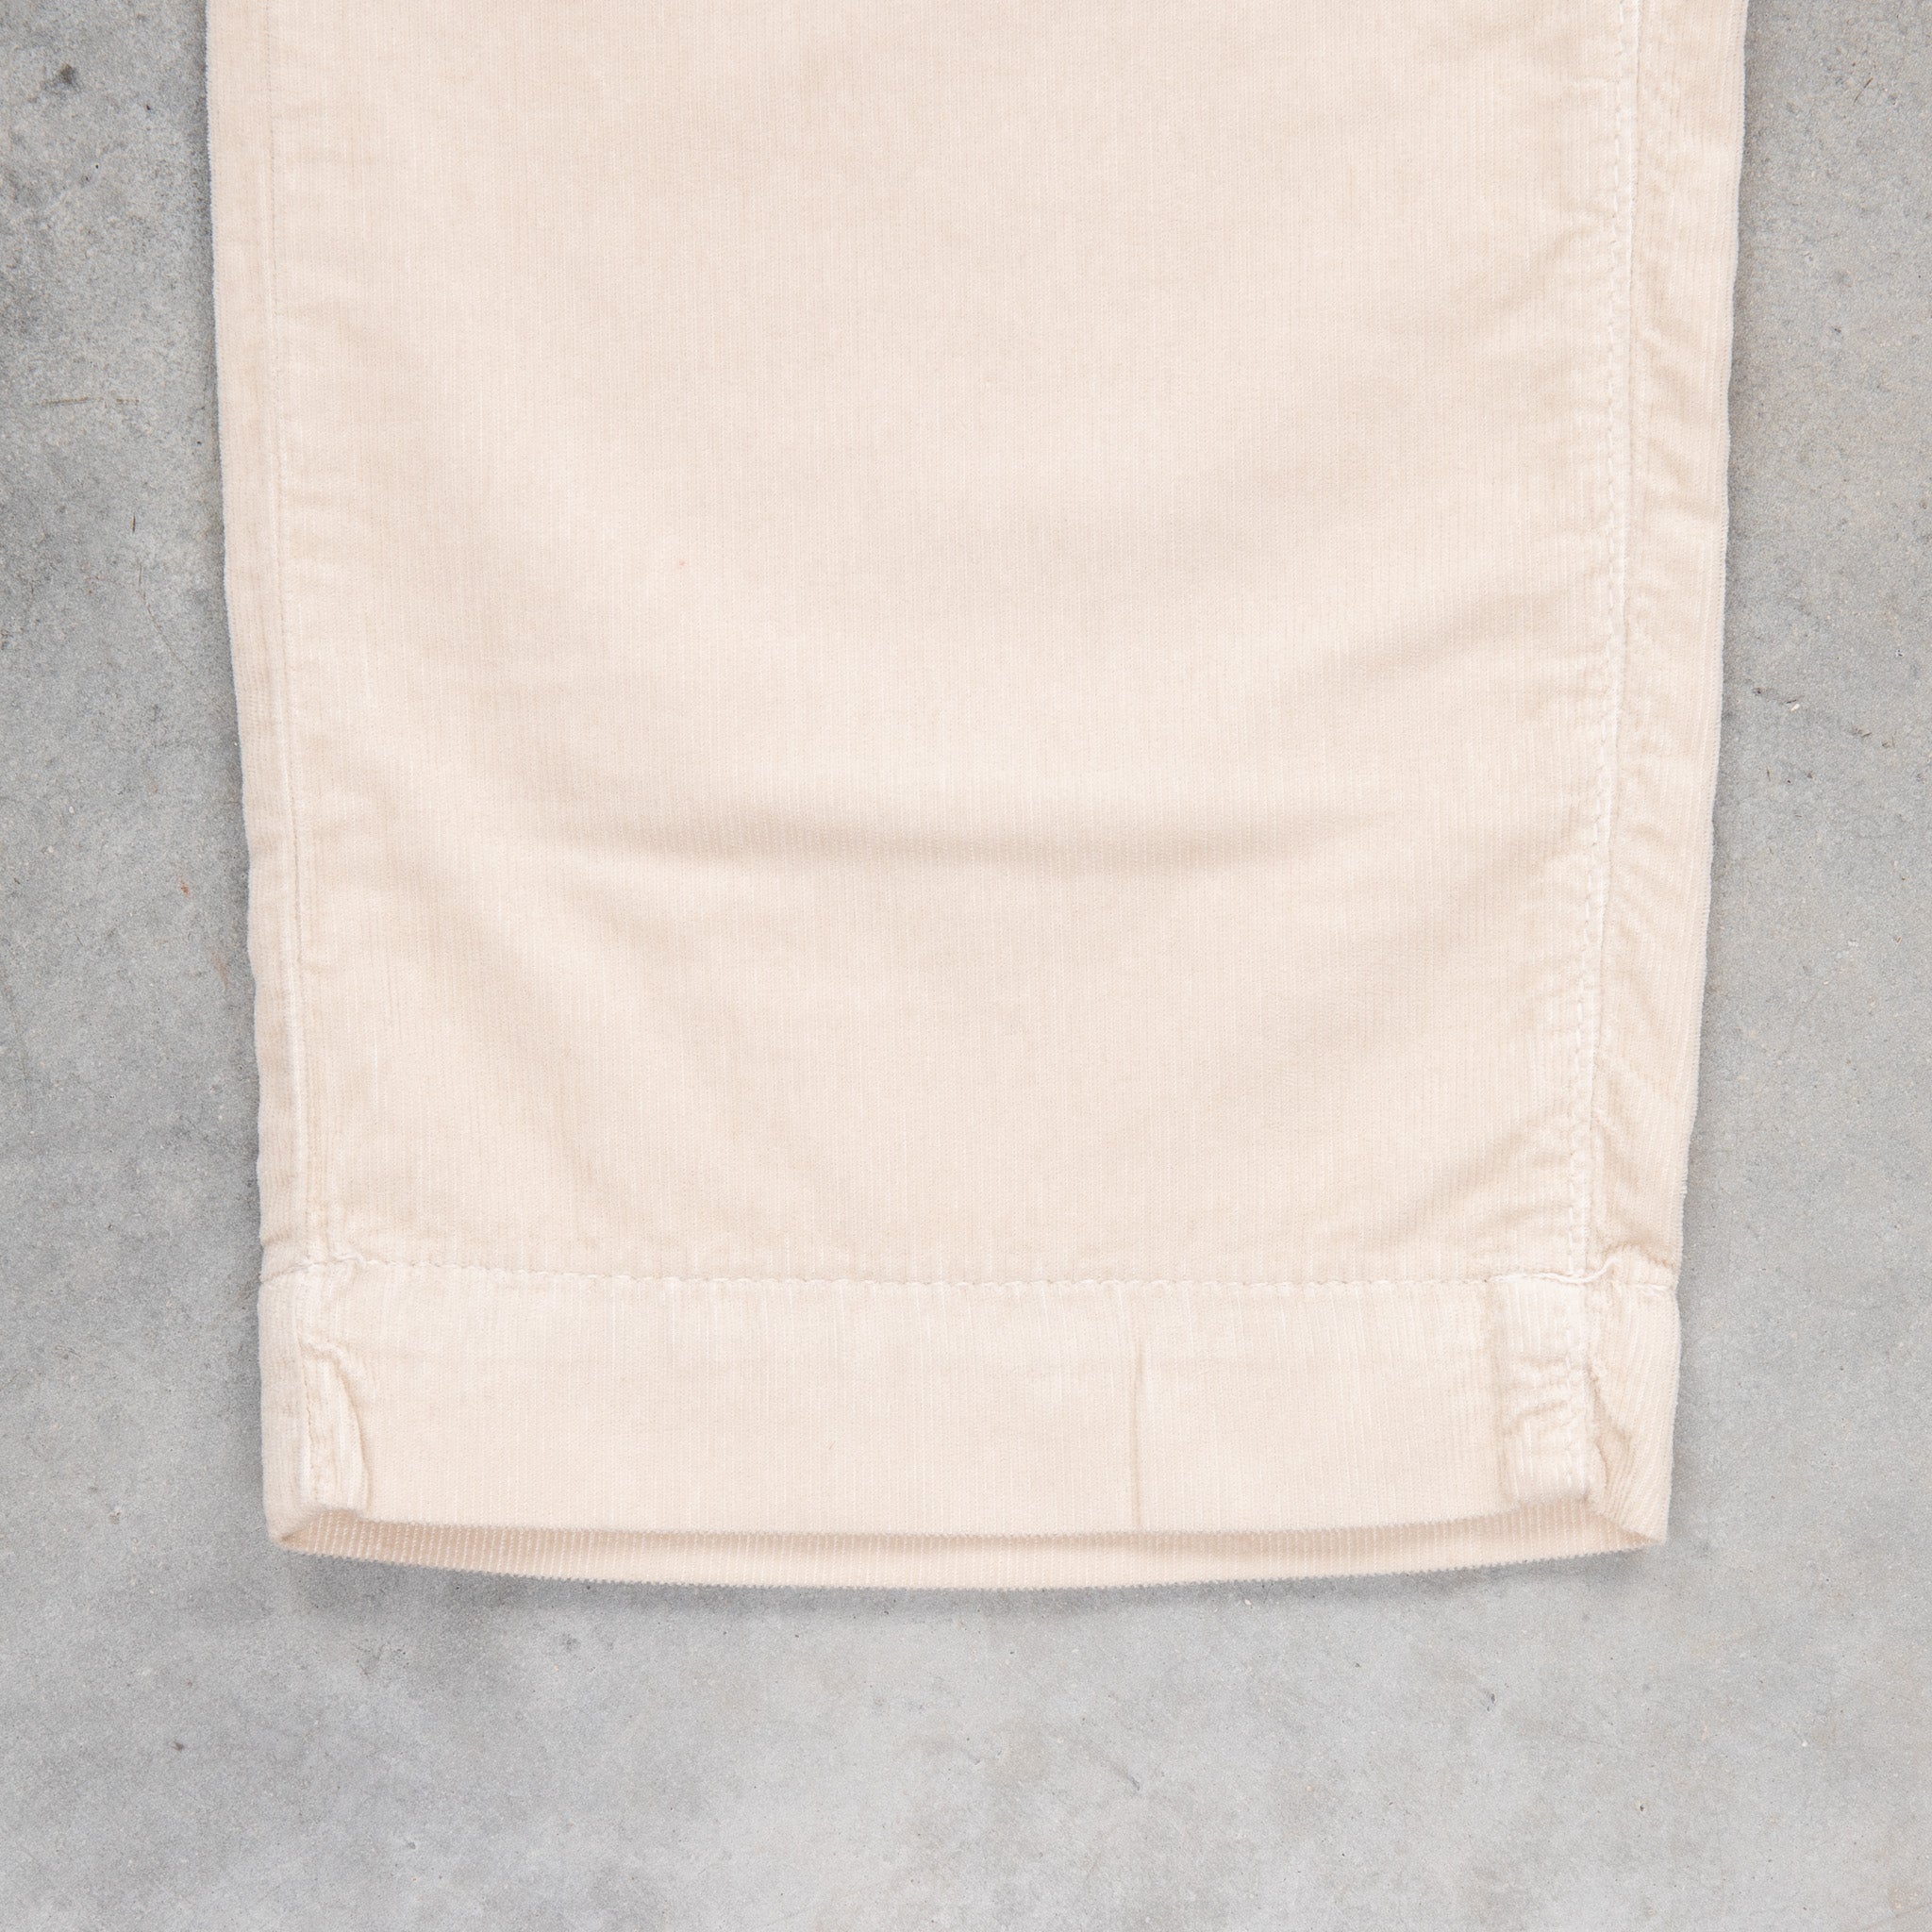 Massimo Alba Alunga Cord Five-Pocket Trousers Calce